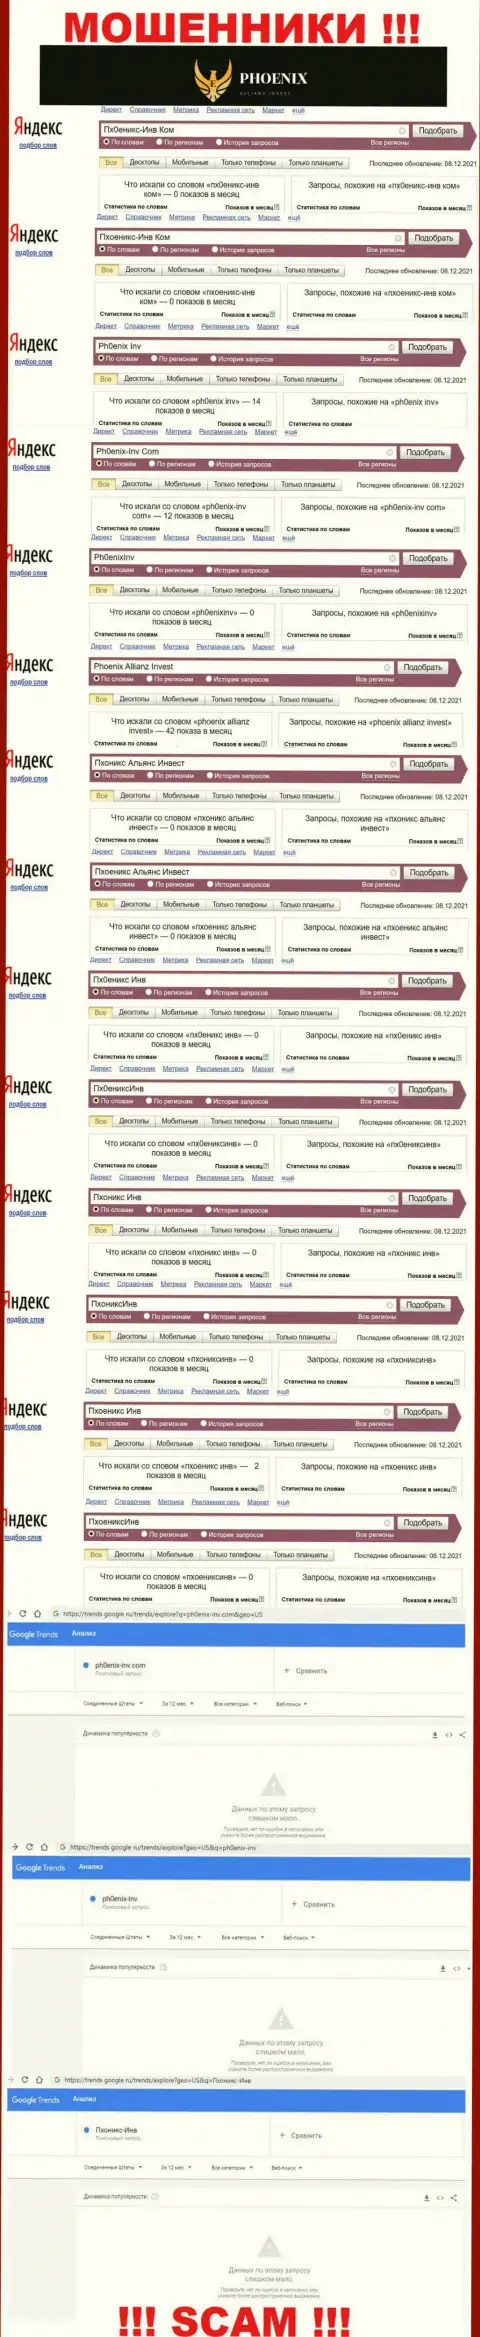 Скриншот статистики поисковых запросов по жульнической организации Пхоеникс-Инв Ком